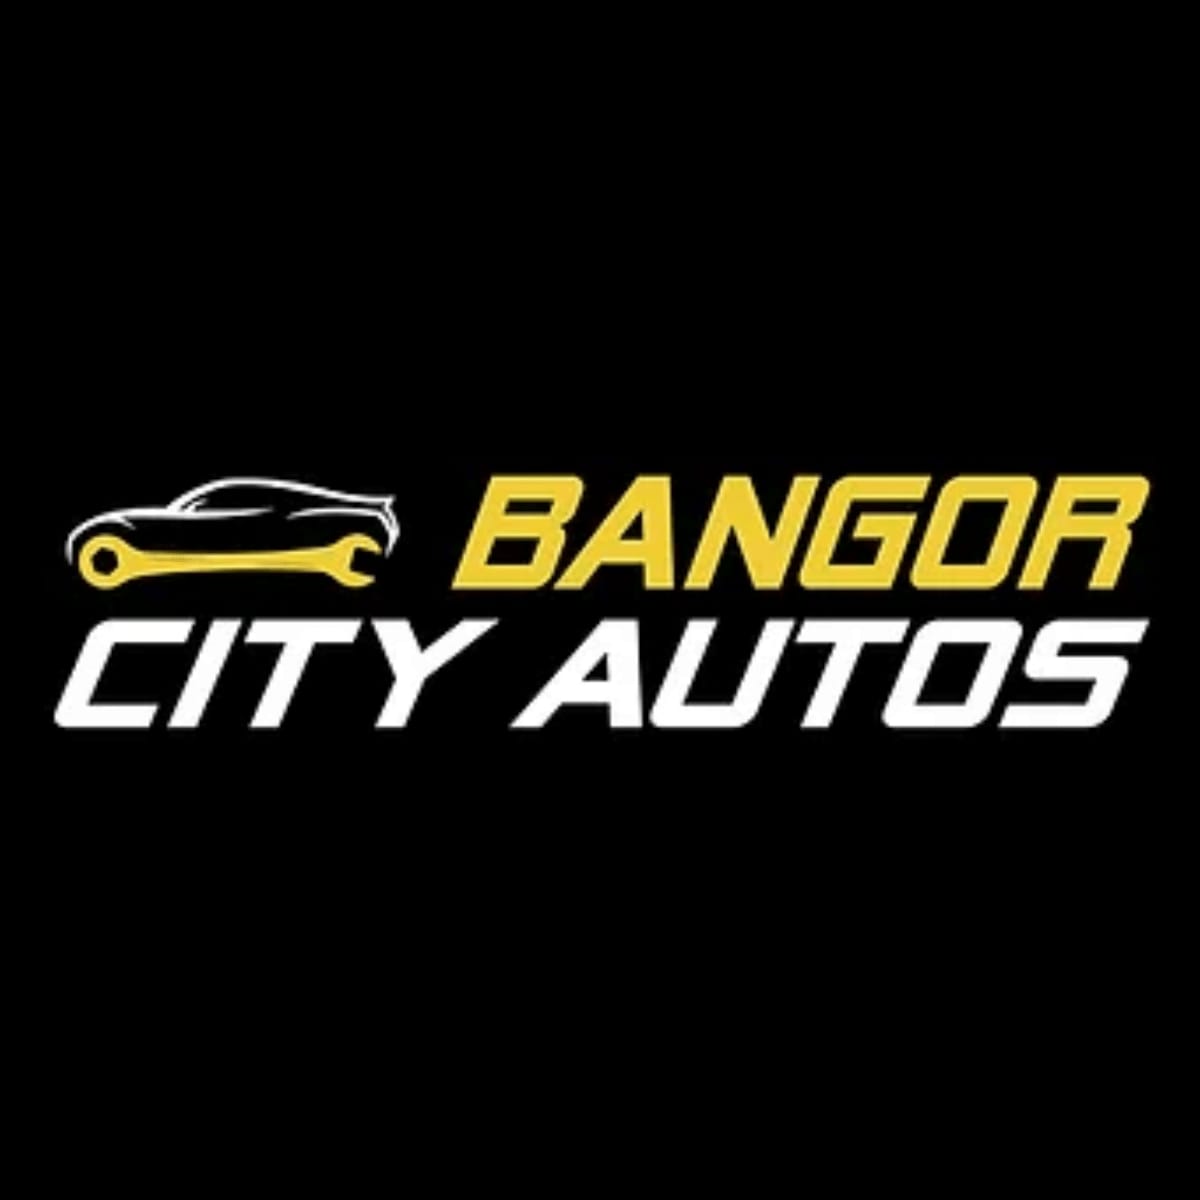 Bangor City Autos Logo